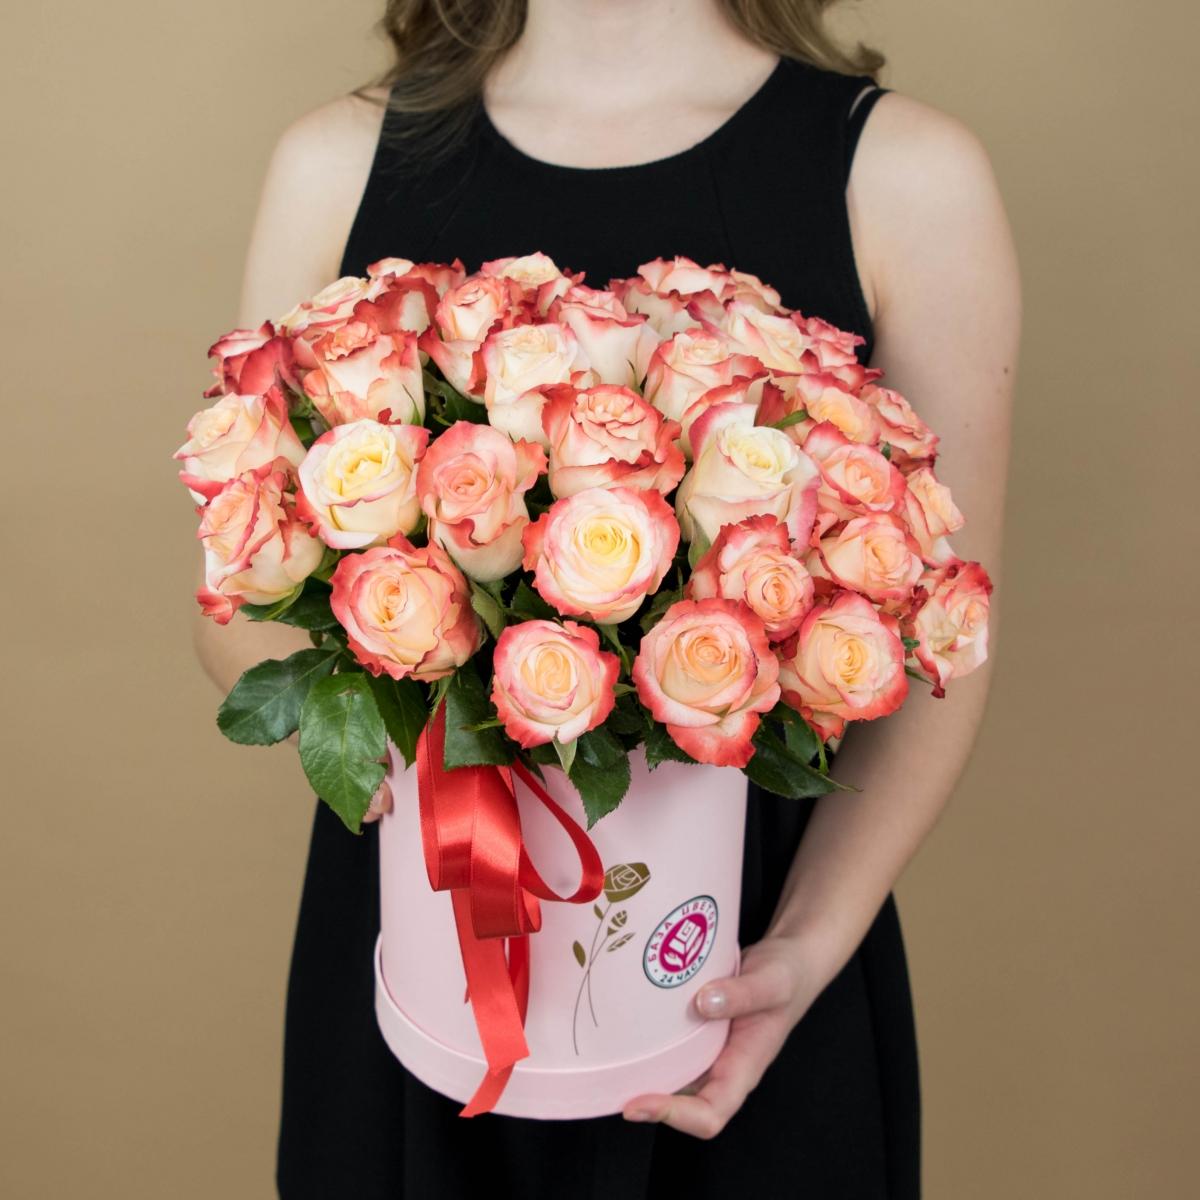 Розы красно-белые в шляпной коробке артикул букета: 4576